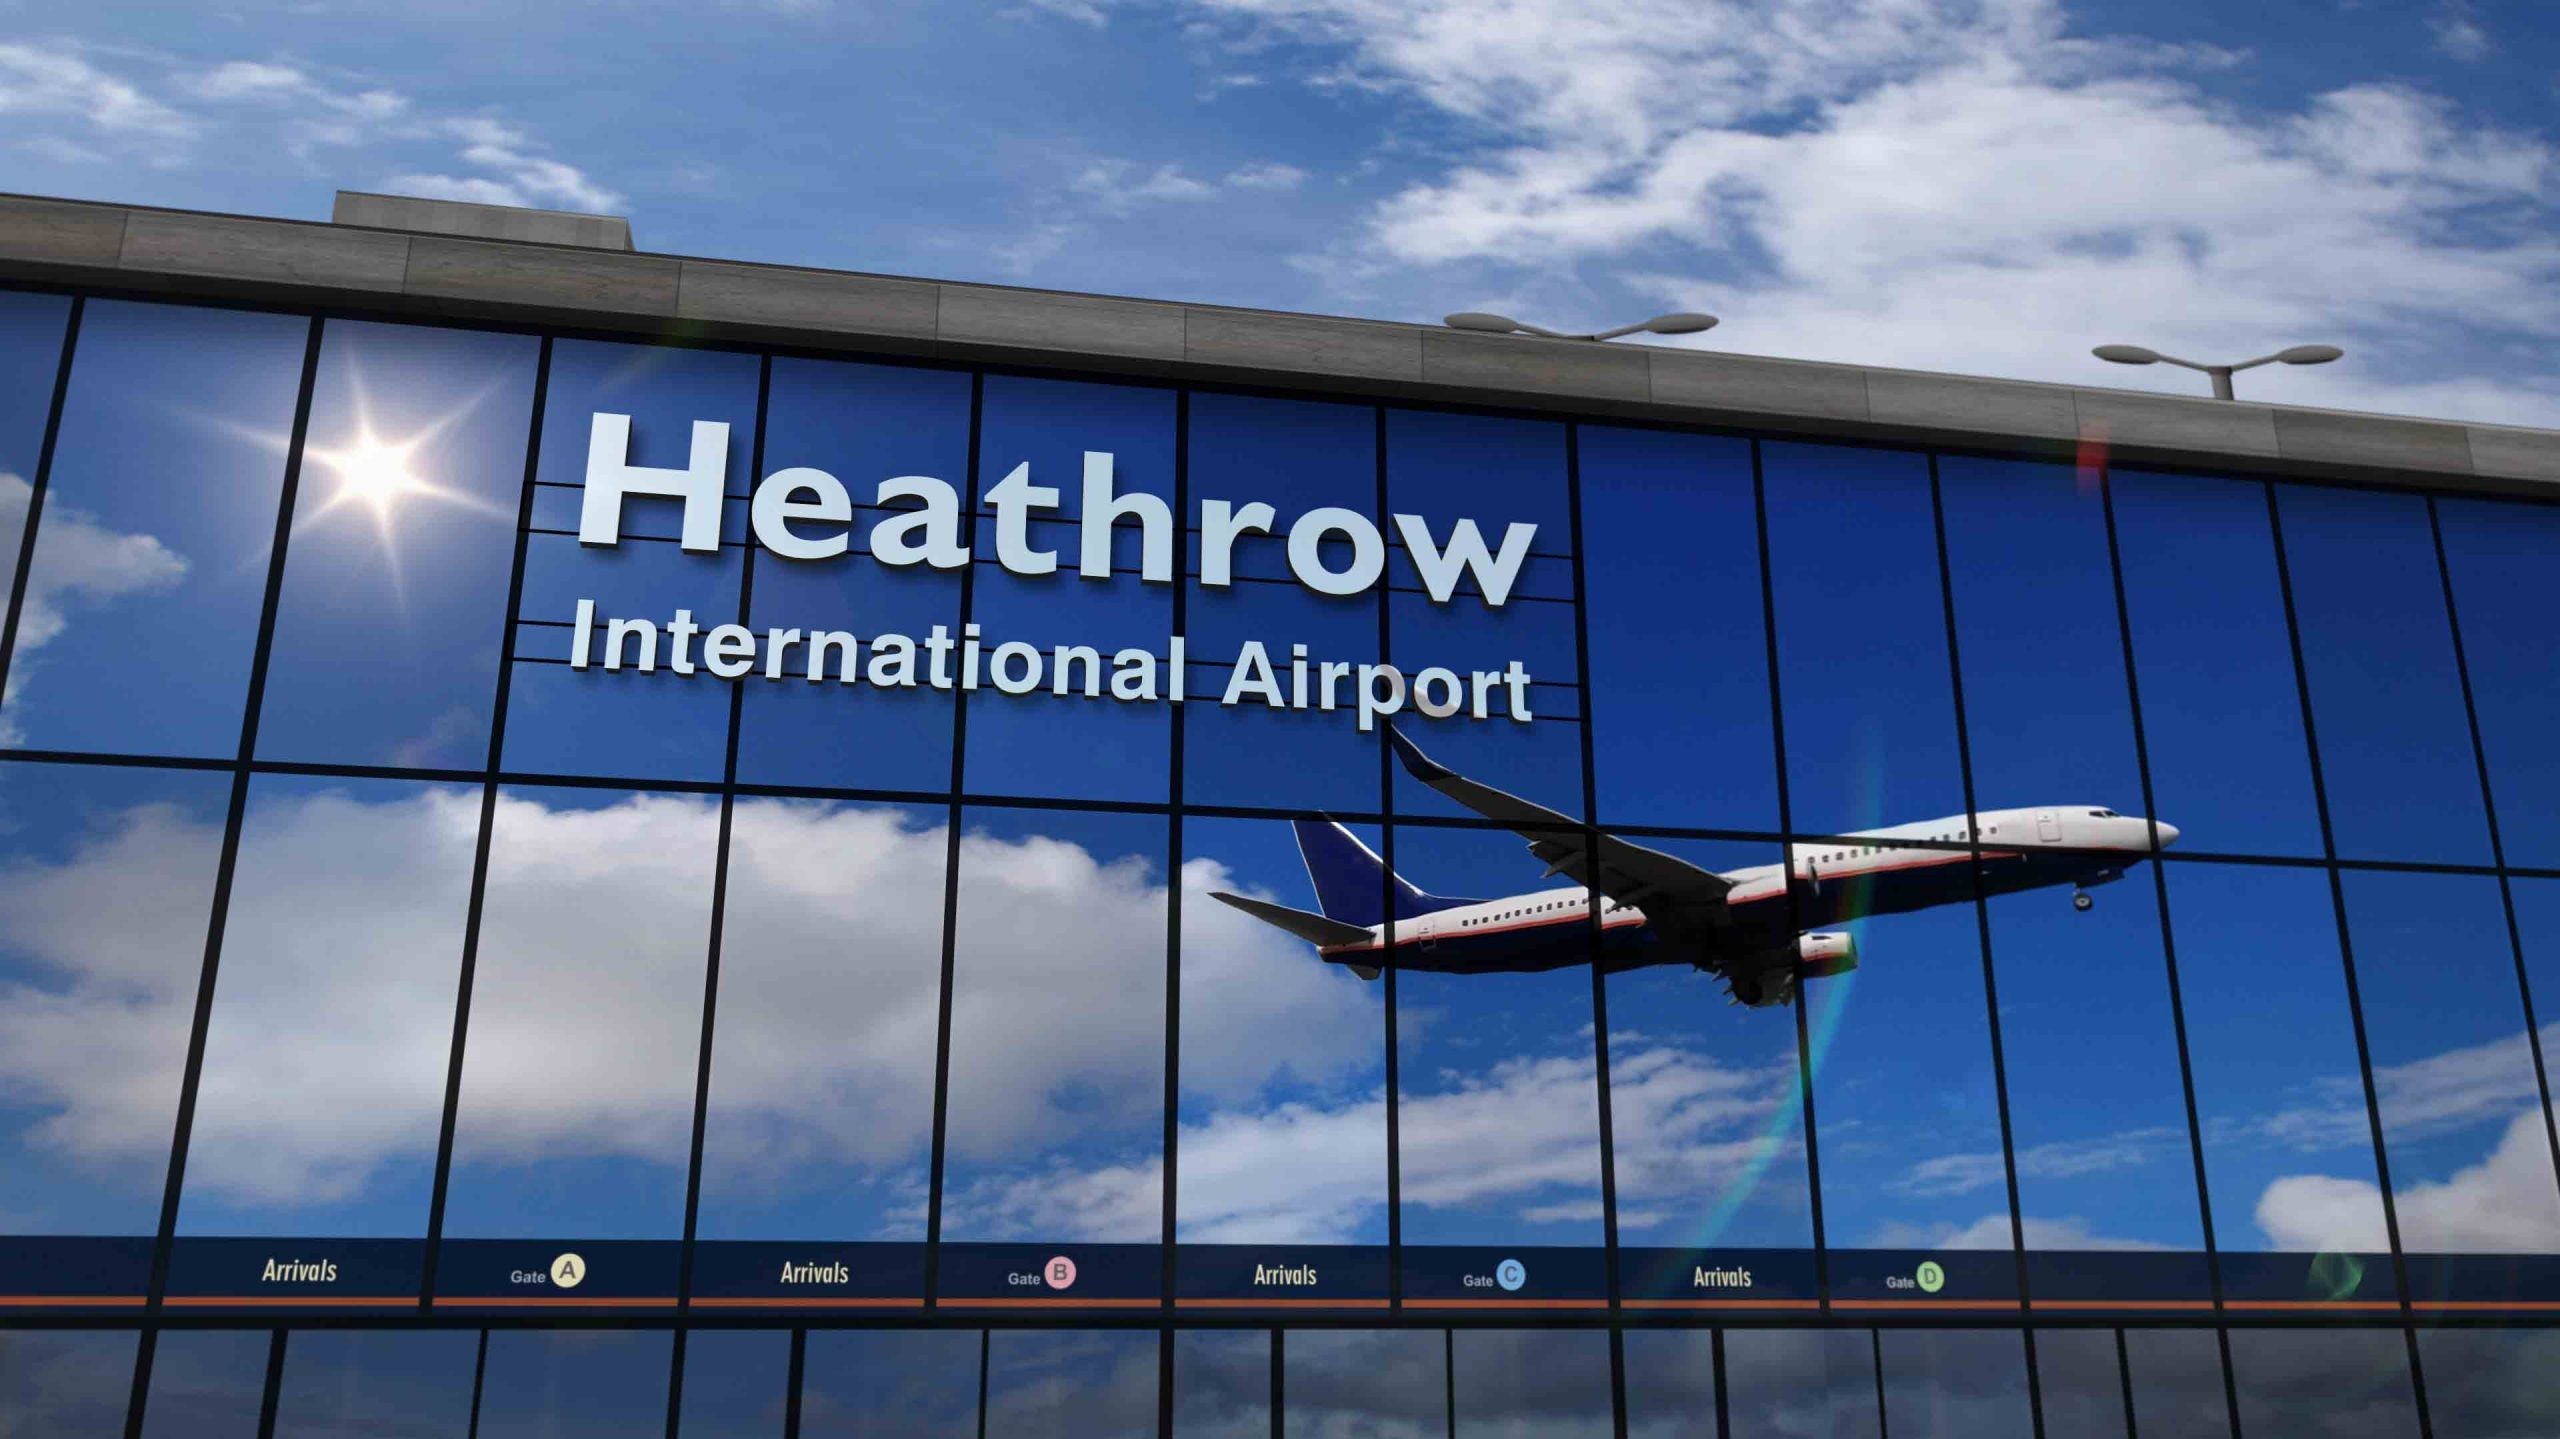 Anh phát hiện chất phóng xạ nguy hiểm tại sân bay quốc tế Heathrow, đơn vị chống khủng bố nhập cuộc